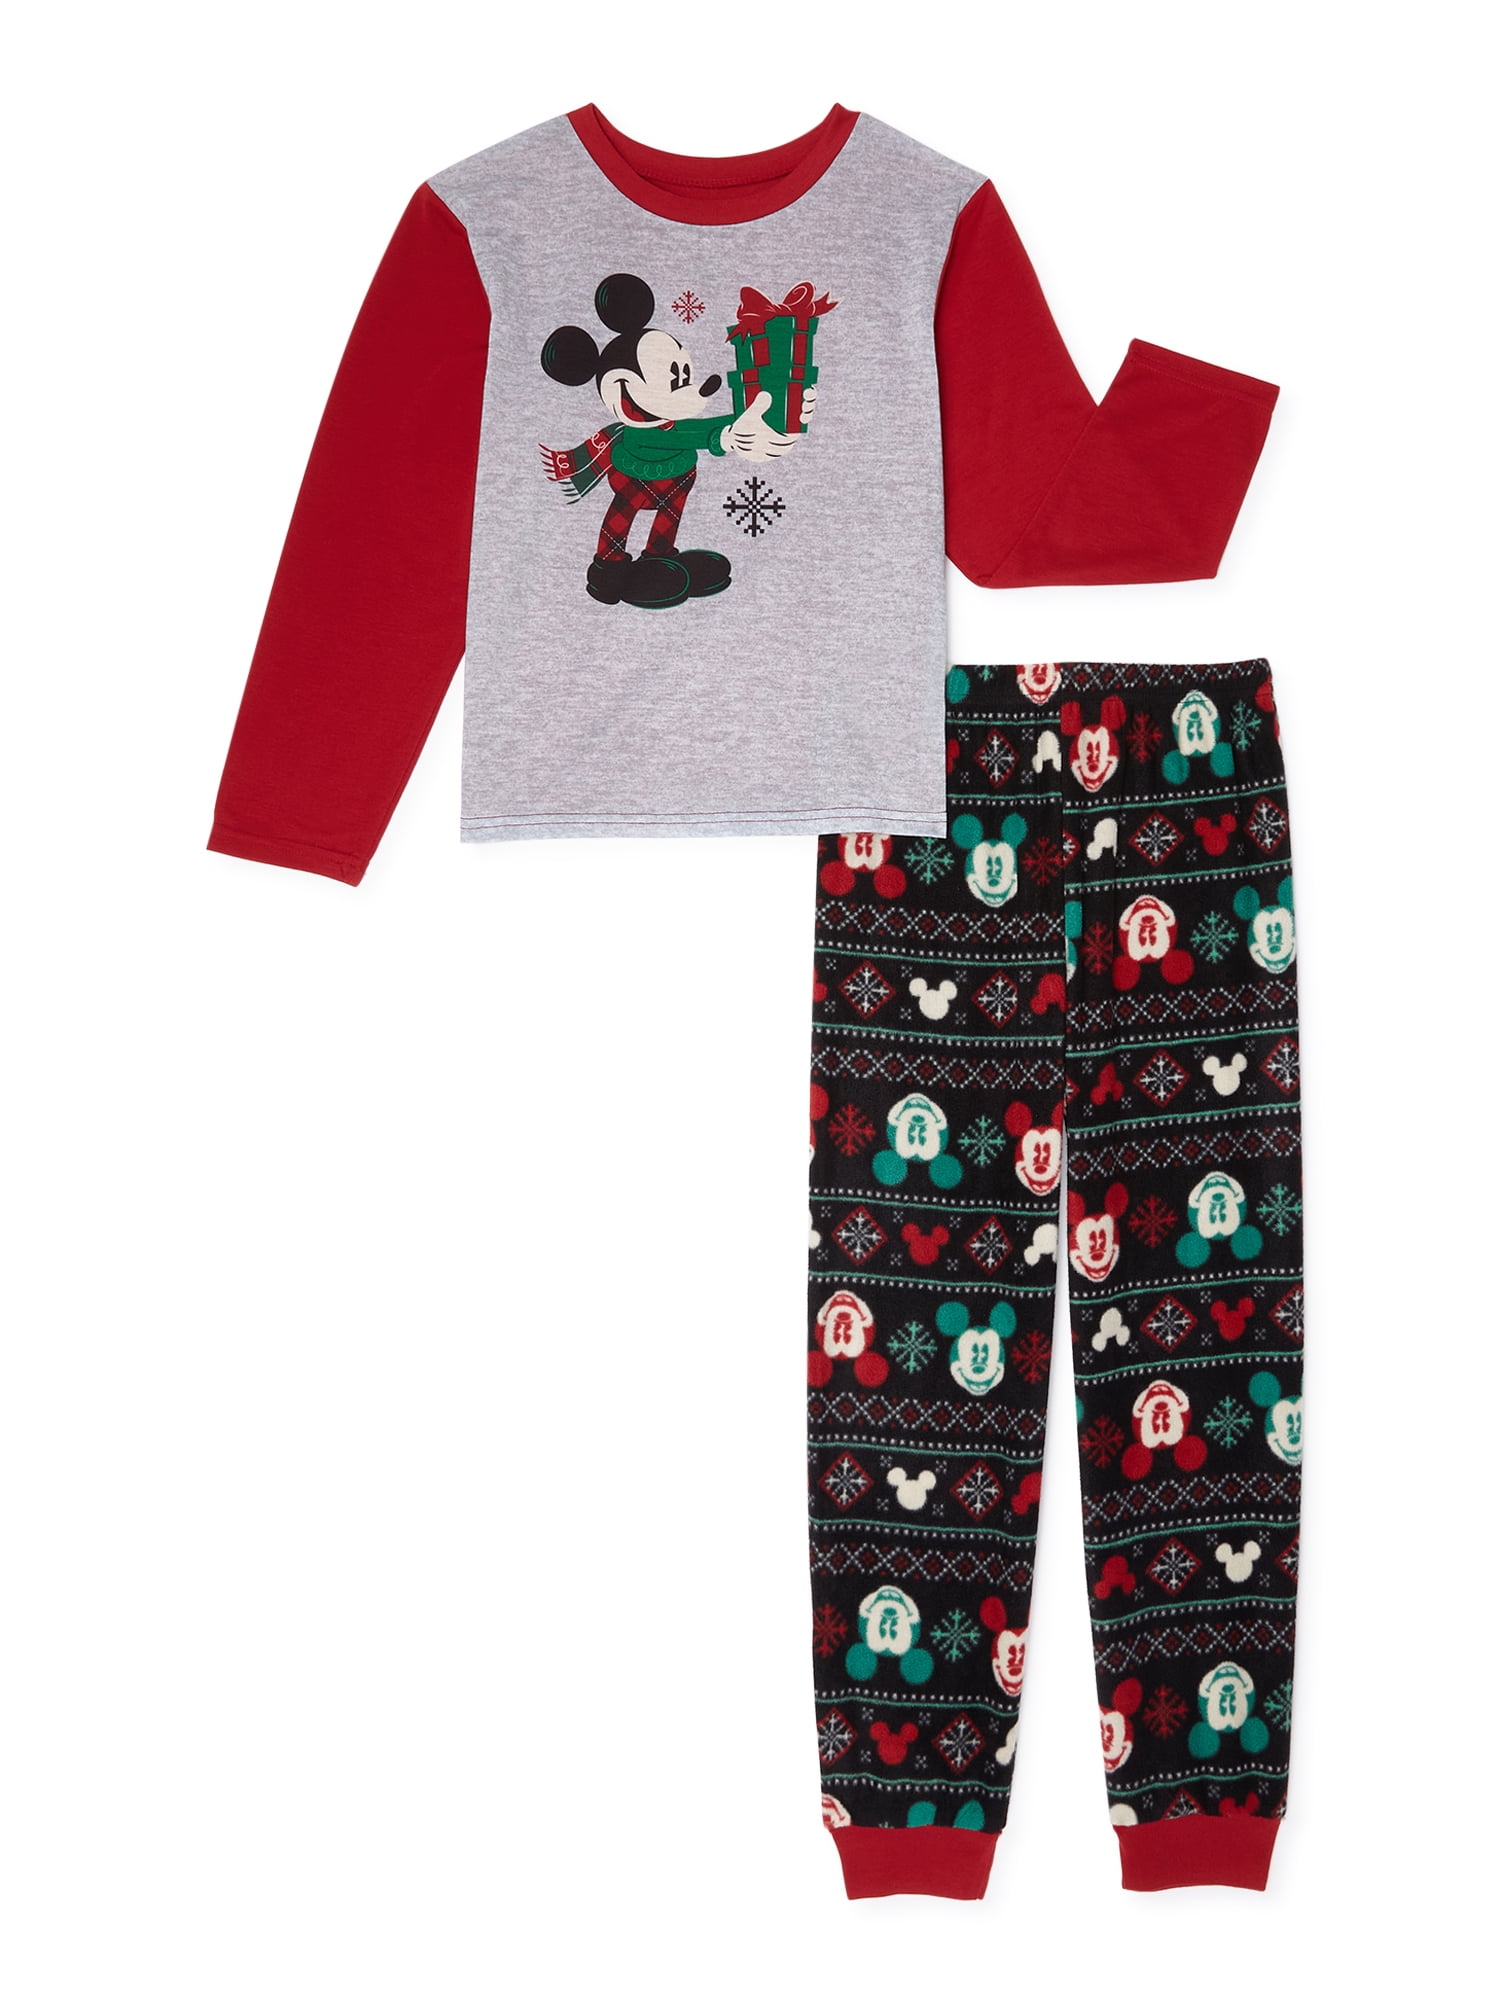 Matching Family Christmas Pajamas Boy's Mickey 2-Piece Pajama Set ...